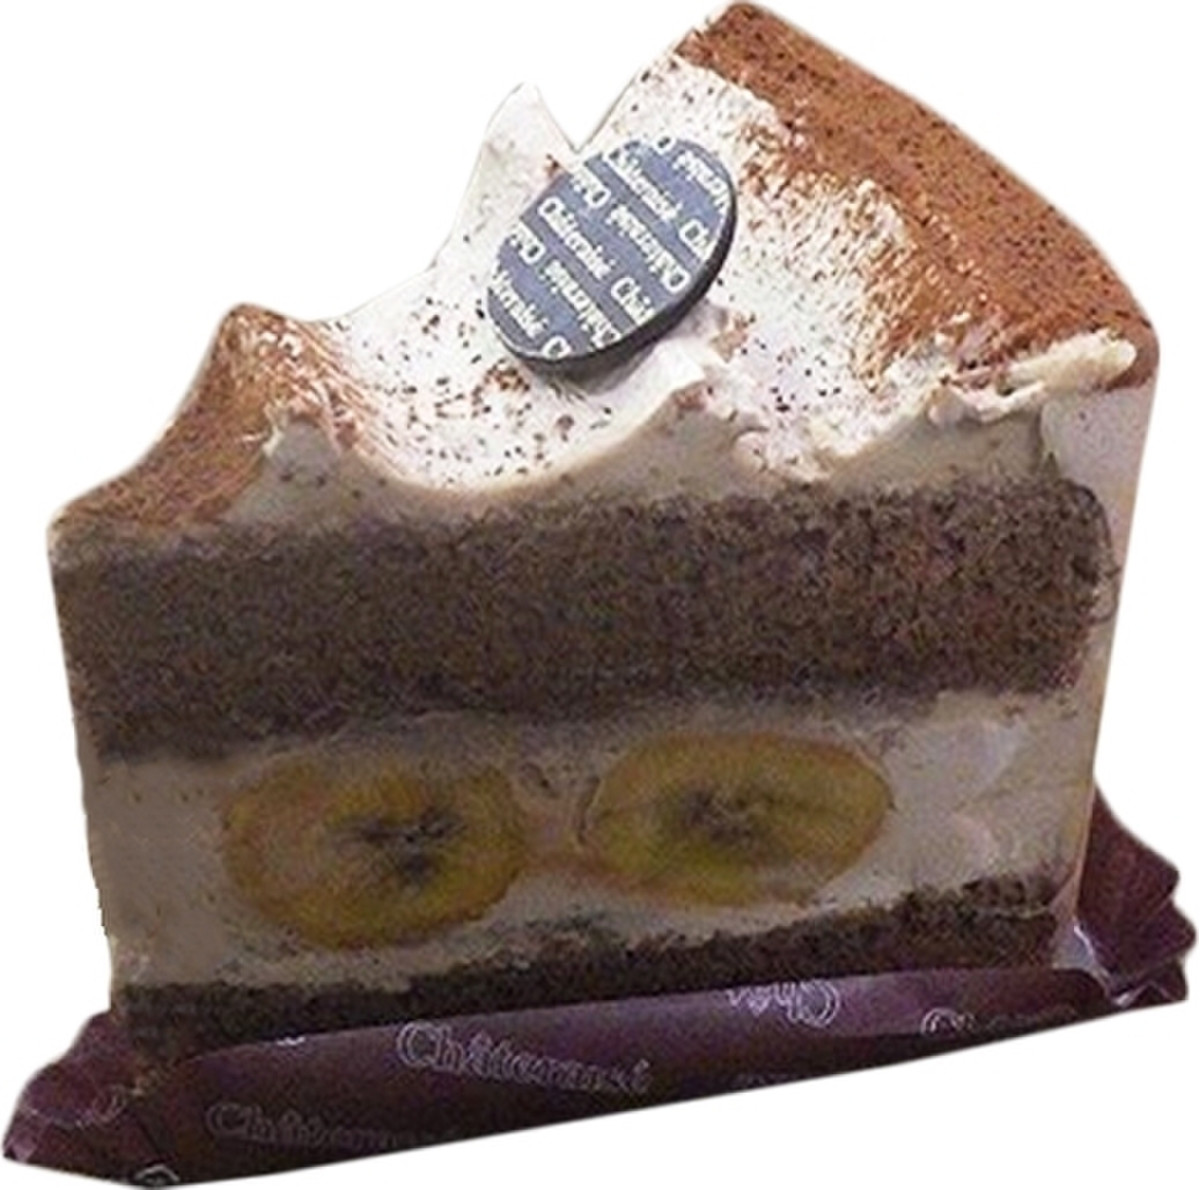 高評価 シャトレーゼ 甘熟王バナナ使用 パリパリチョコバナナケーキ 製造終了 のクチコミ 評価 カロリー 値段 価格情報 もぐナビ